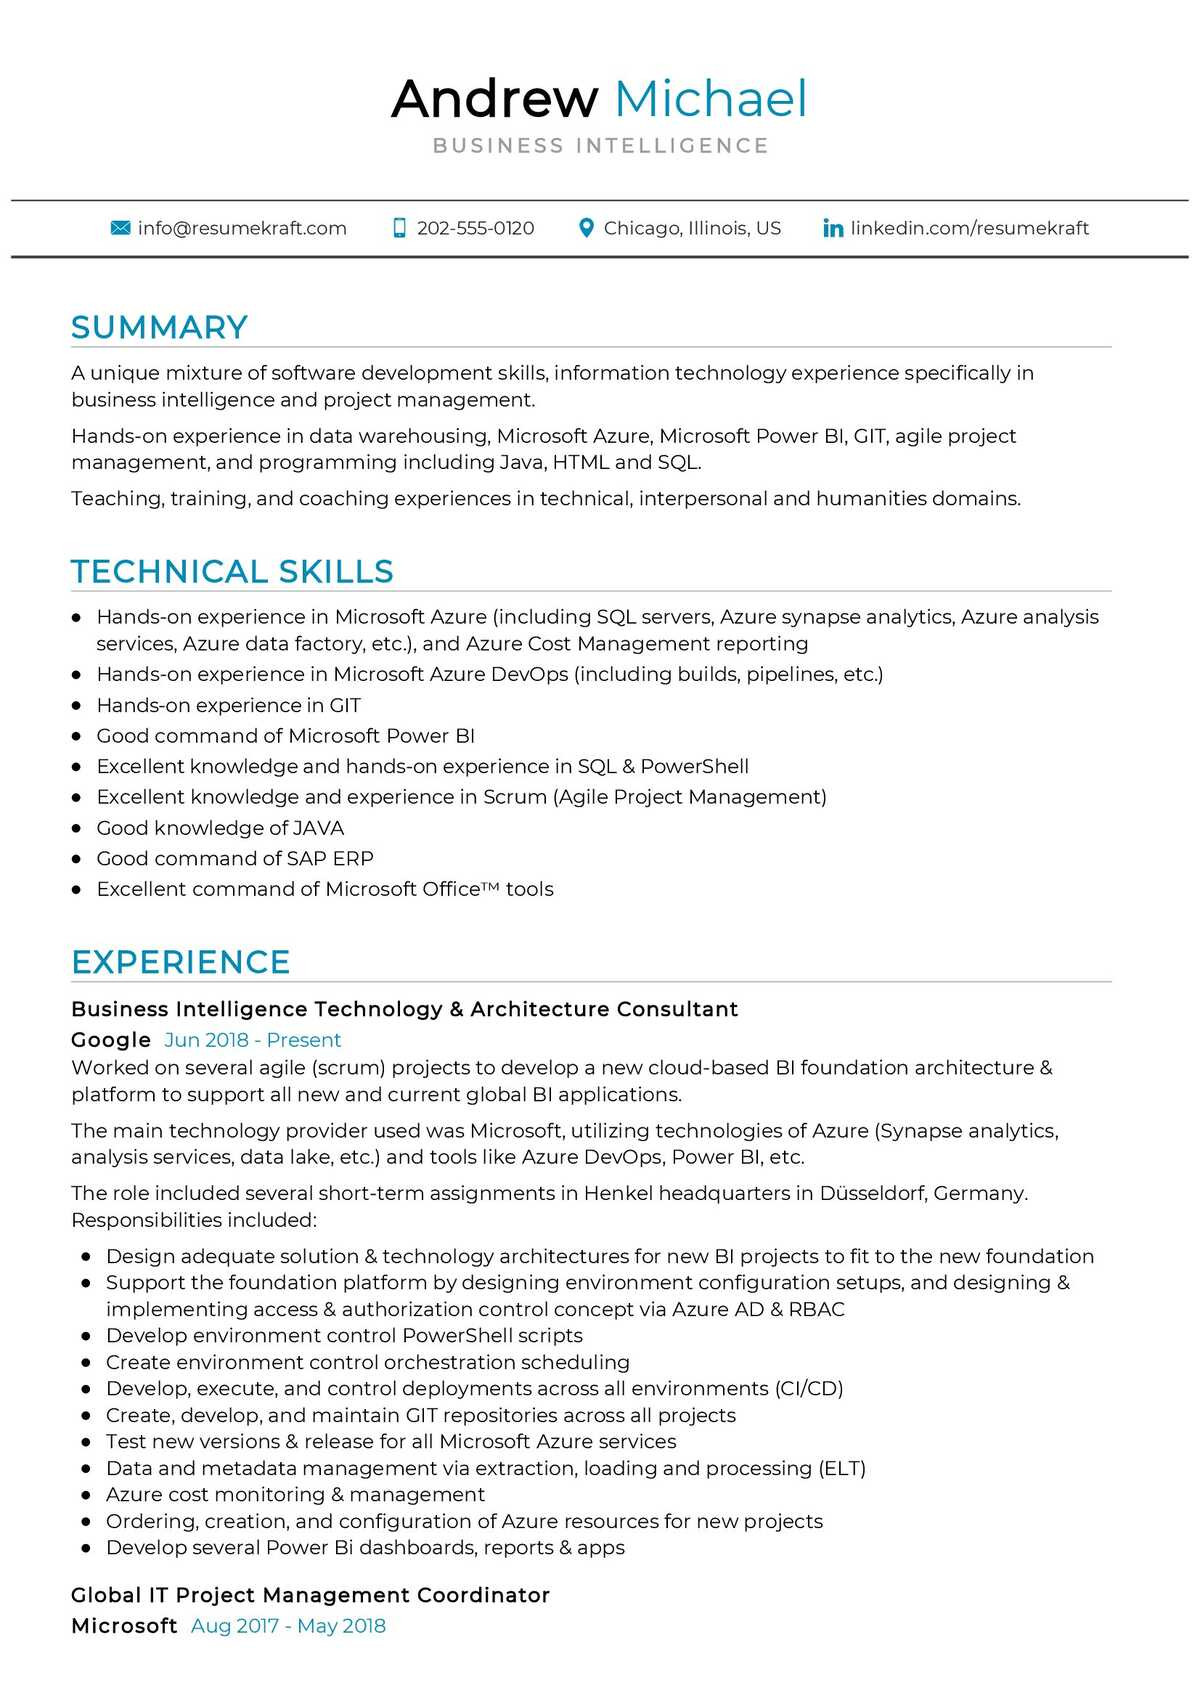 Sample Resume for Business Intelligence Project Manager Business Intelligence Resume Sample 2022 Writing Tips – Resumekraft